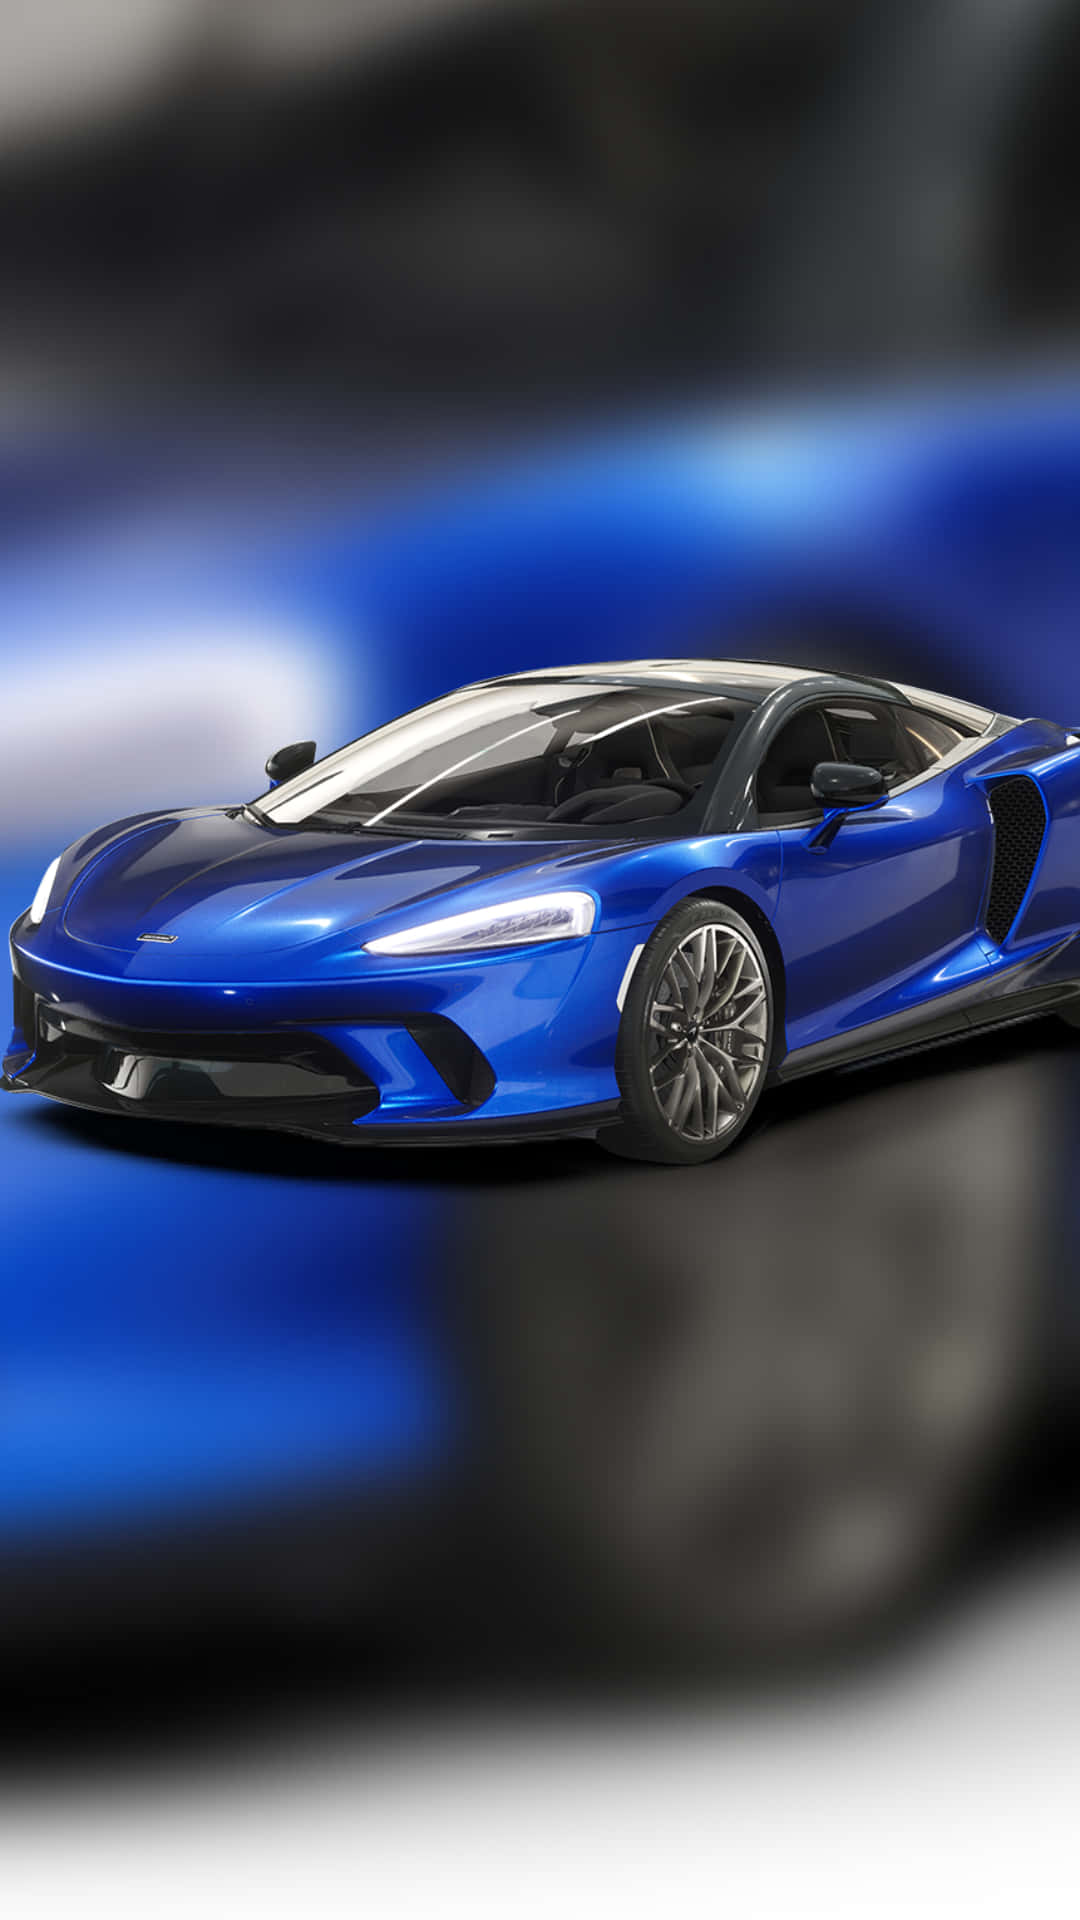 En blå Lamborghini sportsvogn mod en malerisk morgensky. Wallpaper